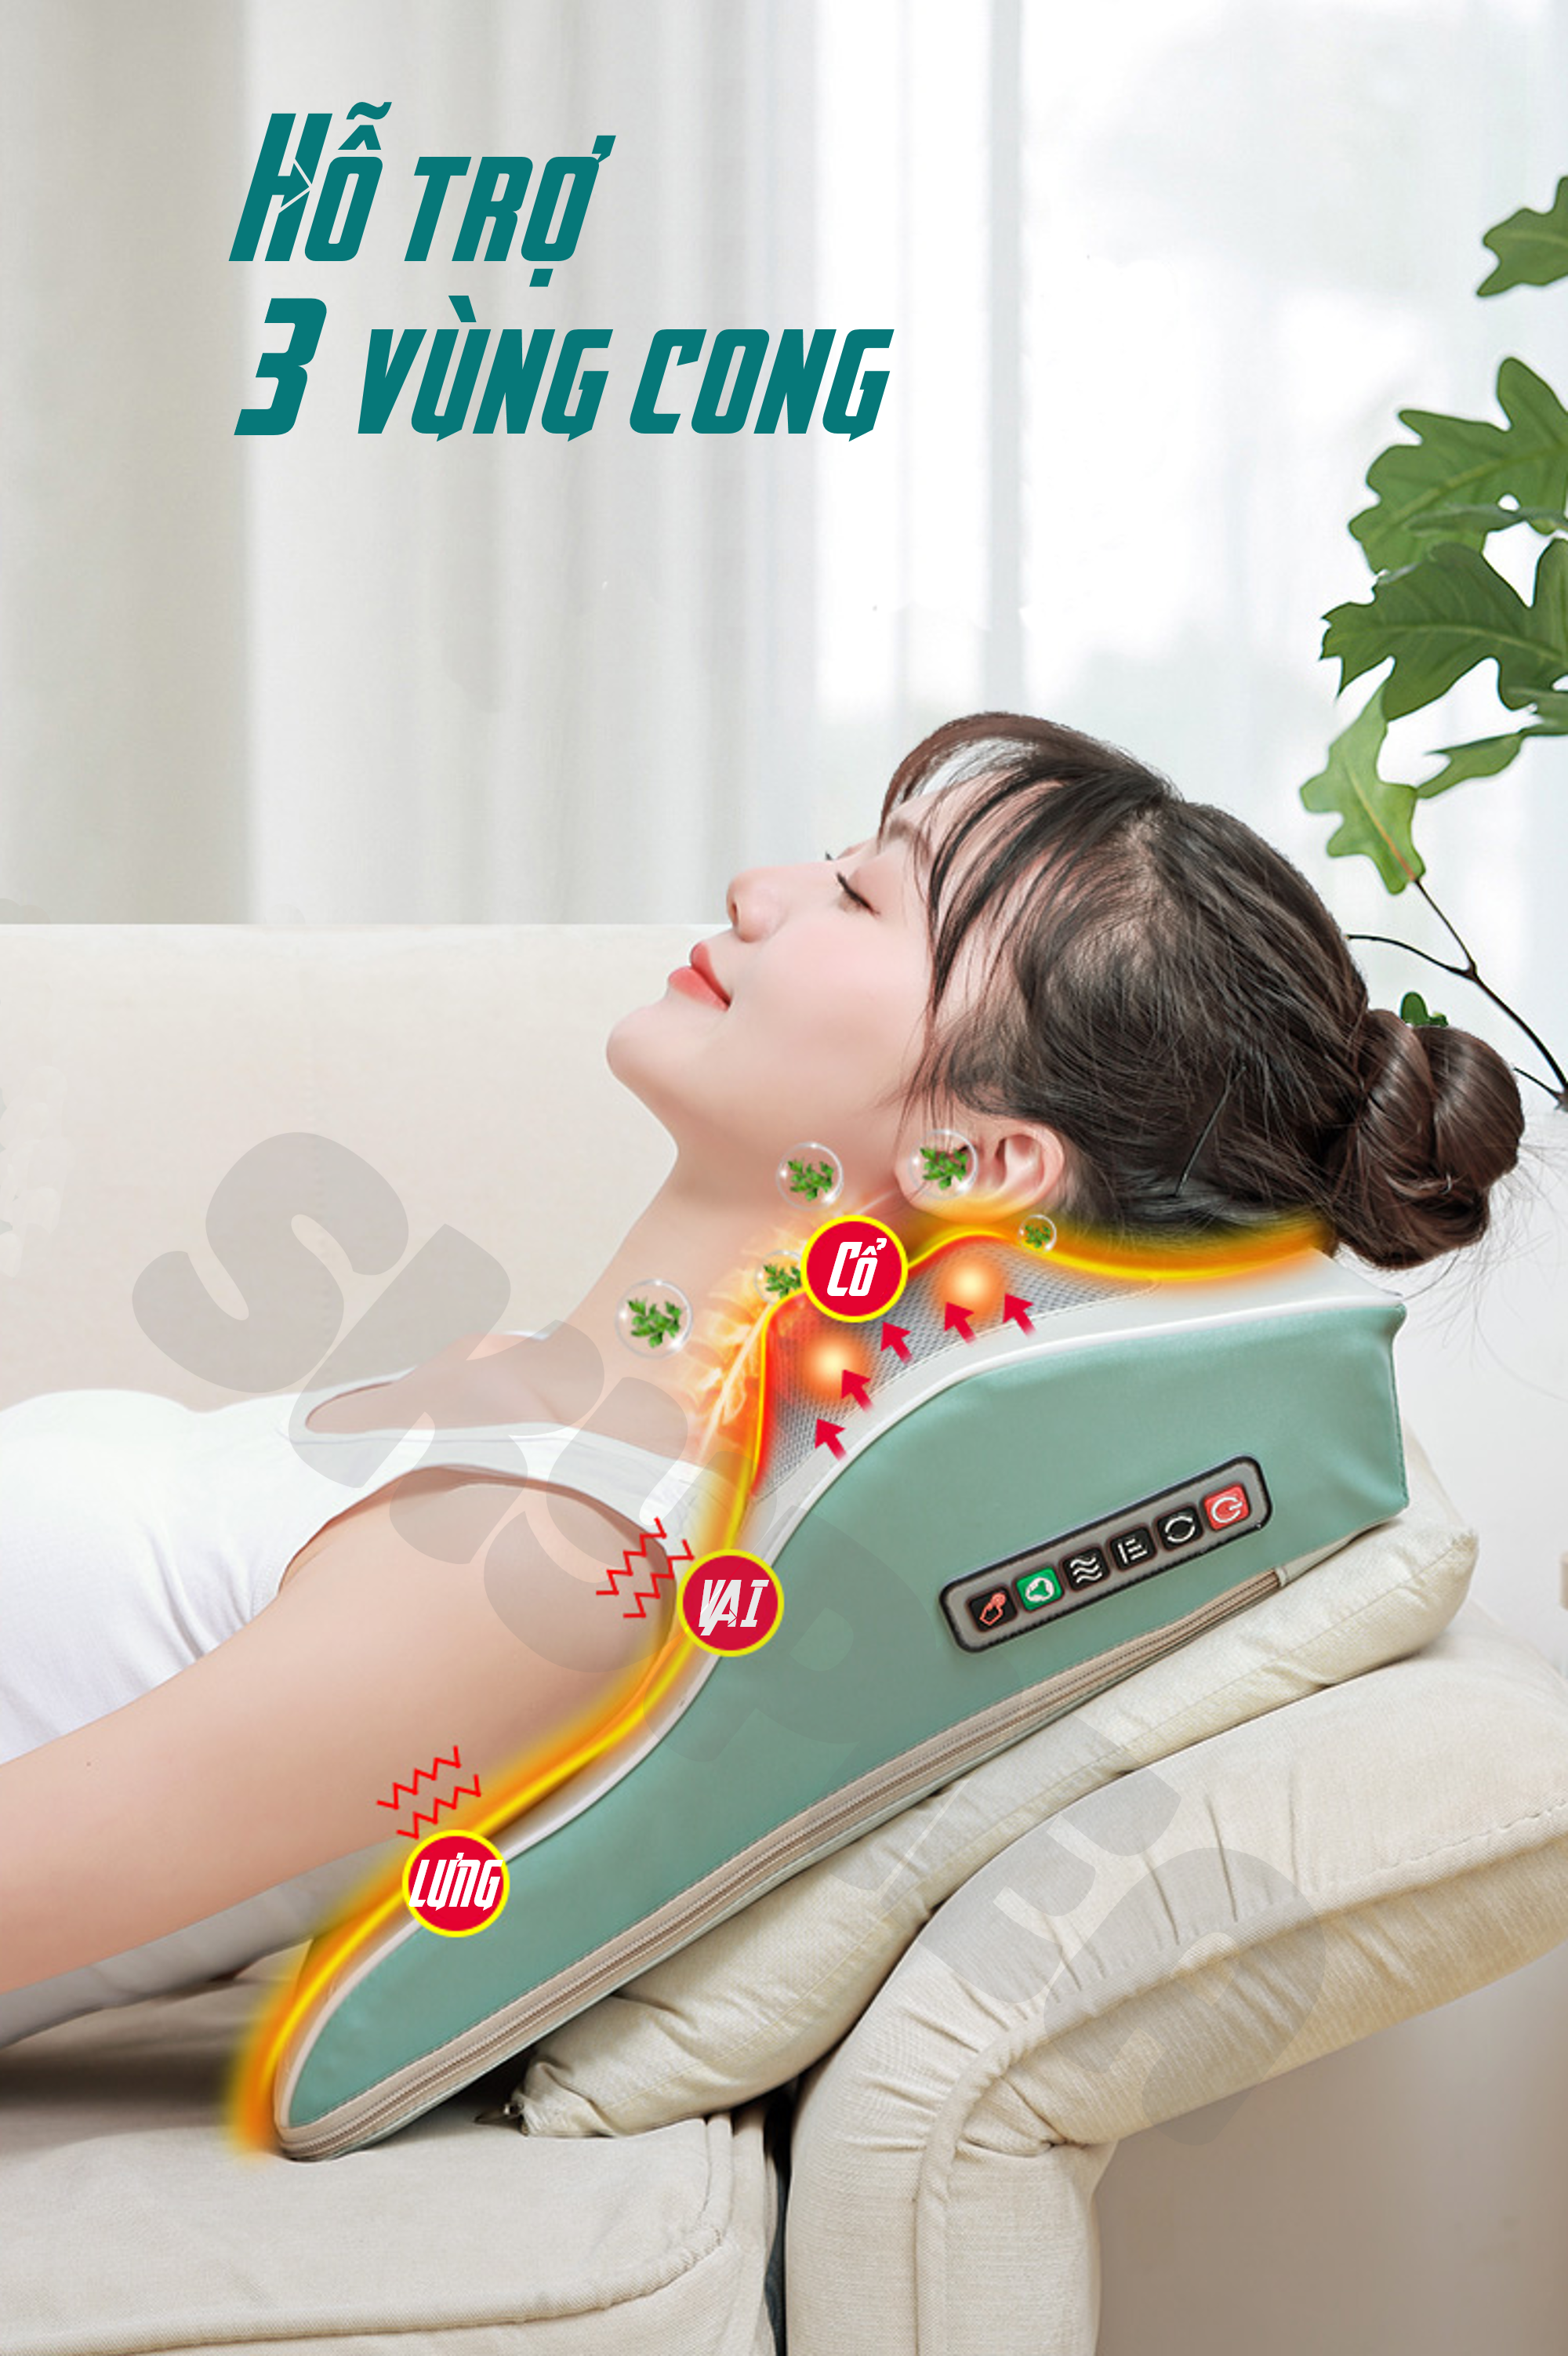 Gối Massage Hồng Ngoại- Model 2021 - 16 Đầu Bi Mát Xa - Thương Hiệu SKYPIEA -  Sử Dụng Pin Sạc - Đệm Massage Toàn Thân